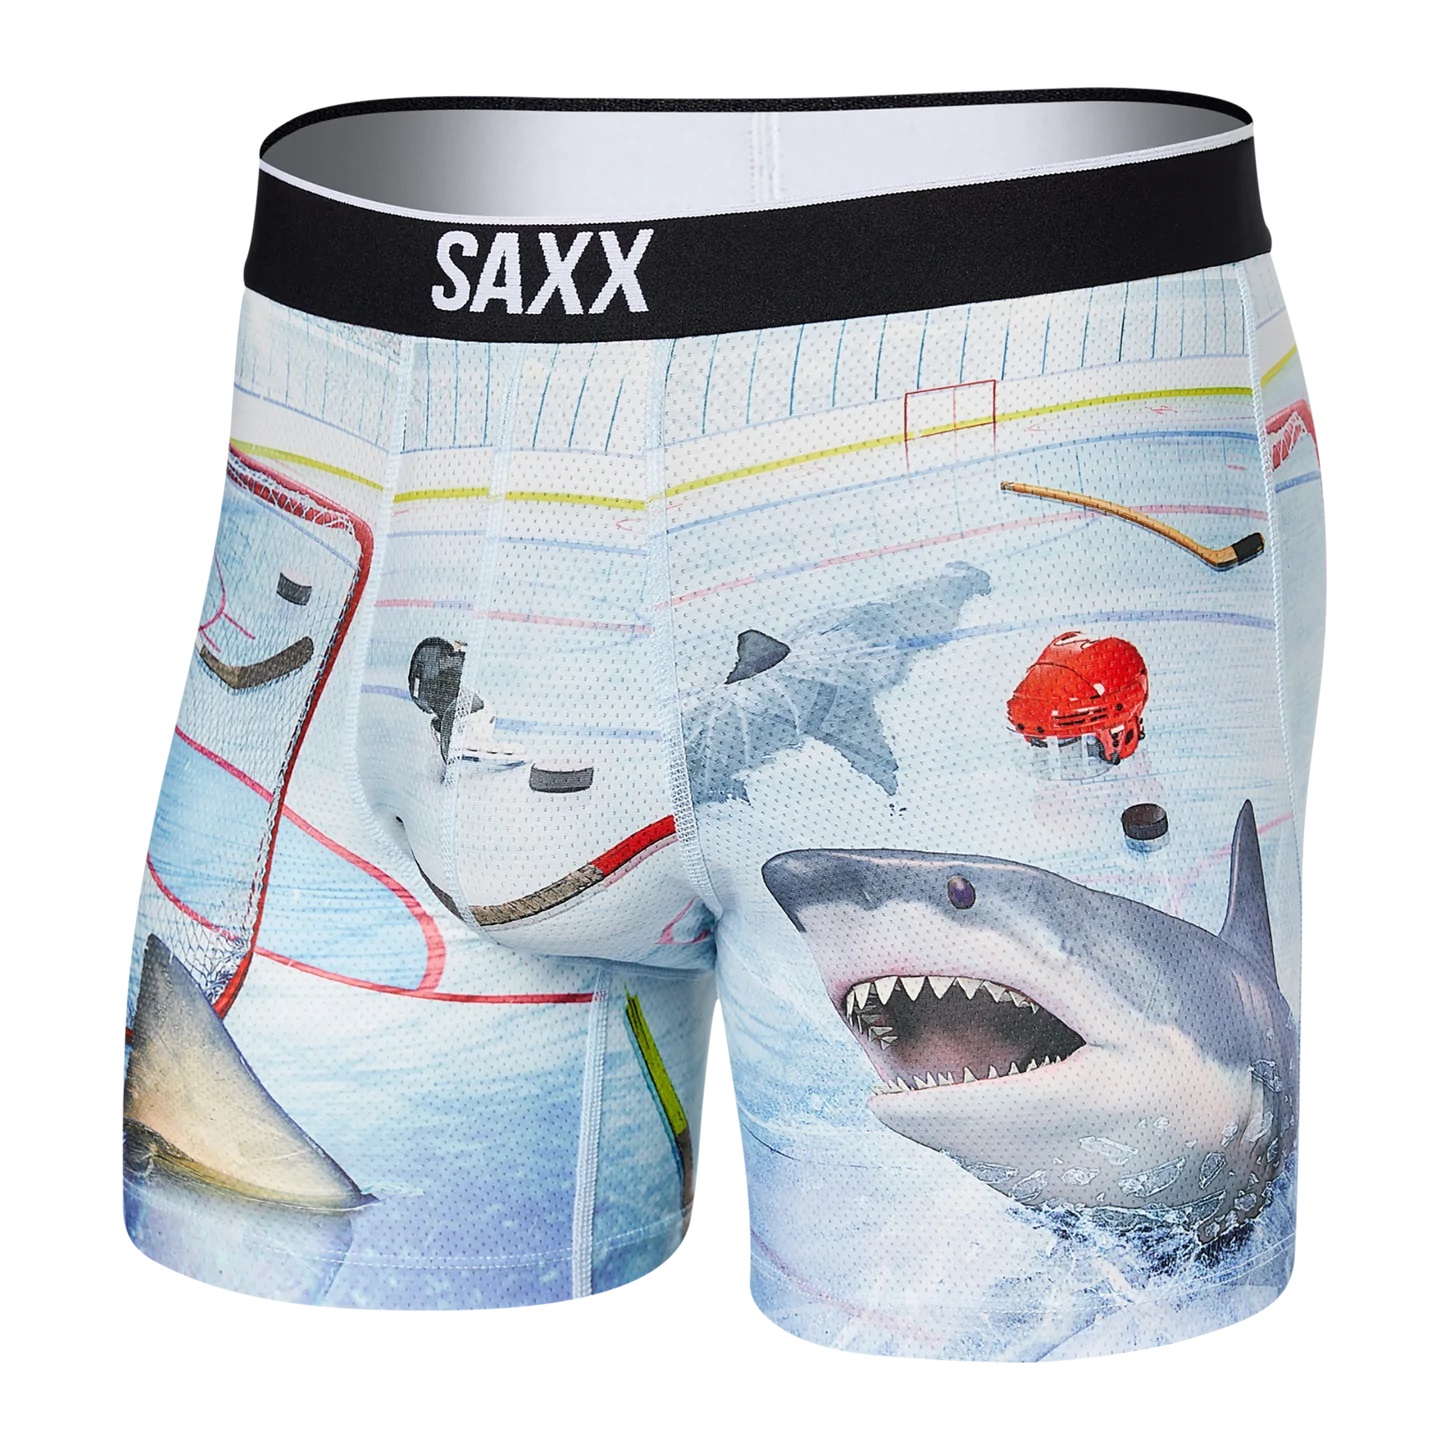 SAXX VOLT The Enforcer Underwear